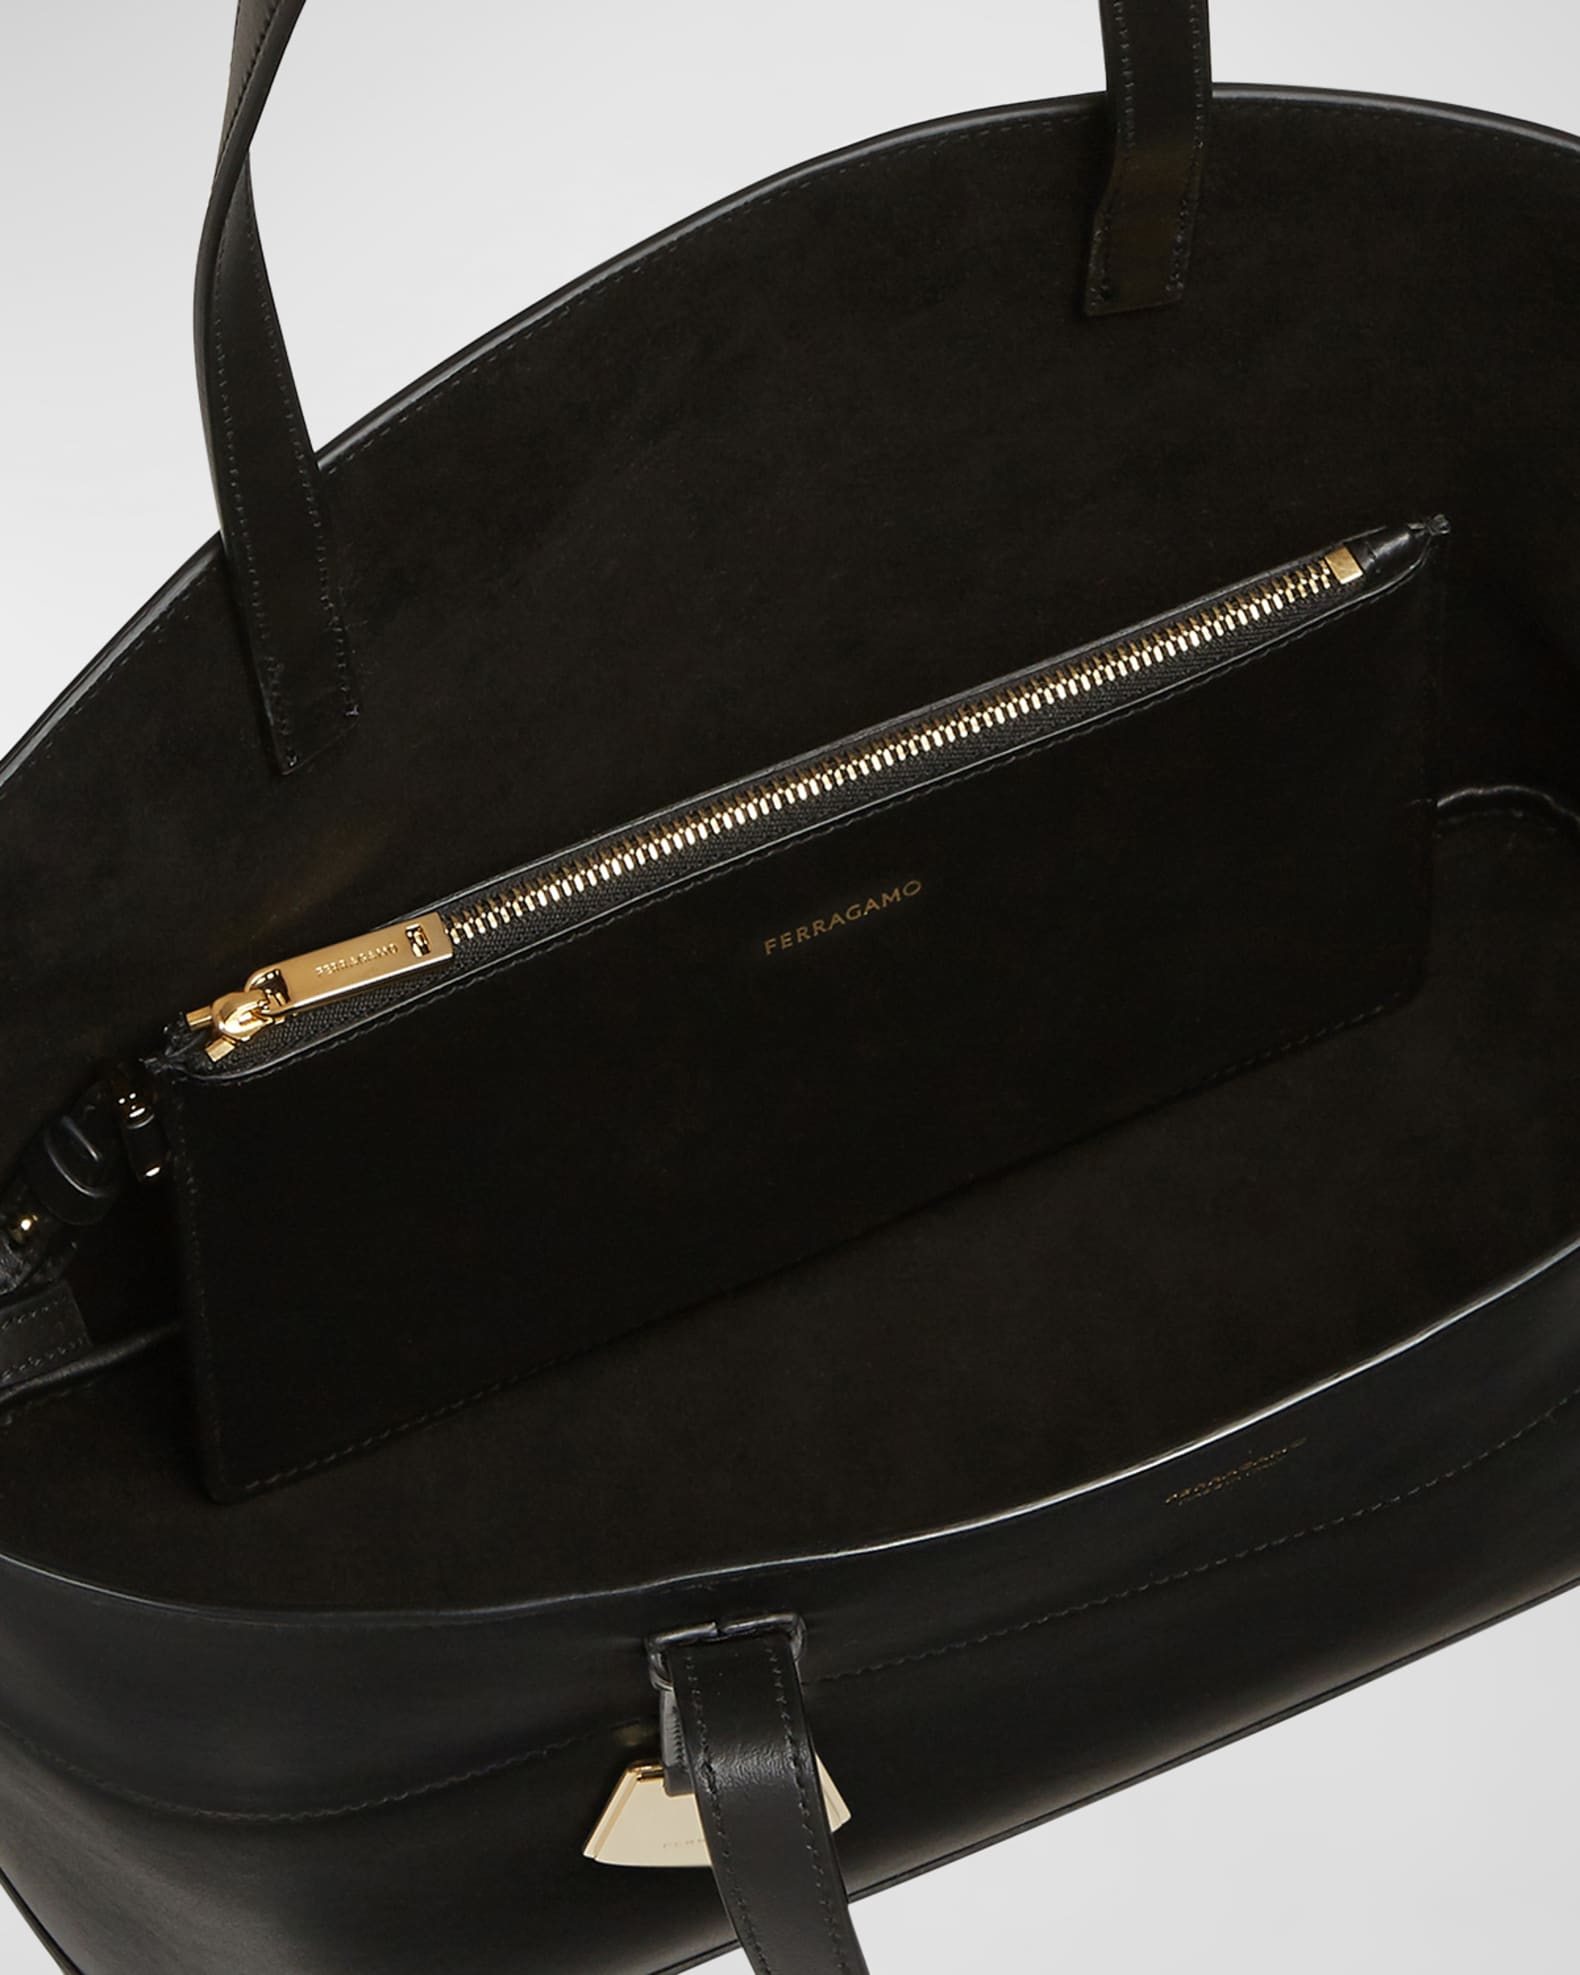 Ferragamo Charming Small Leather Tote Bag | Neiman Marcus